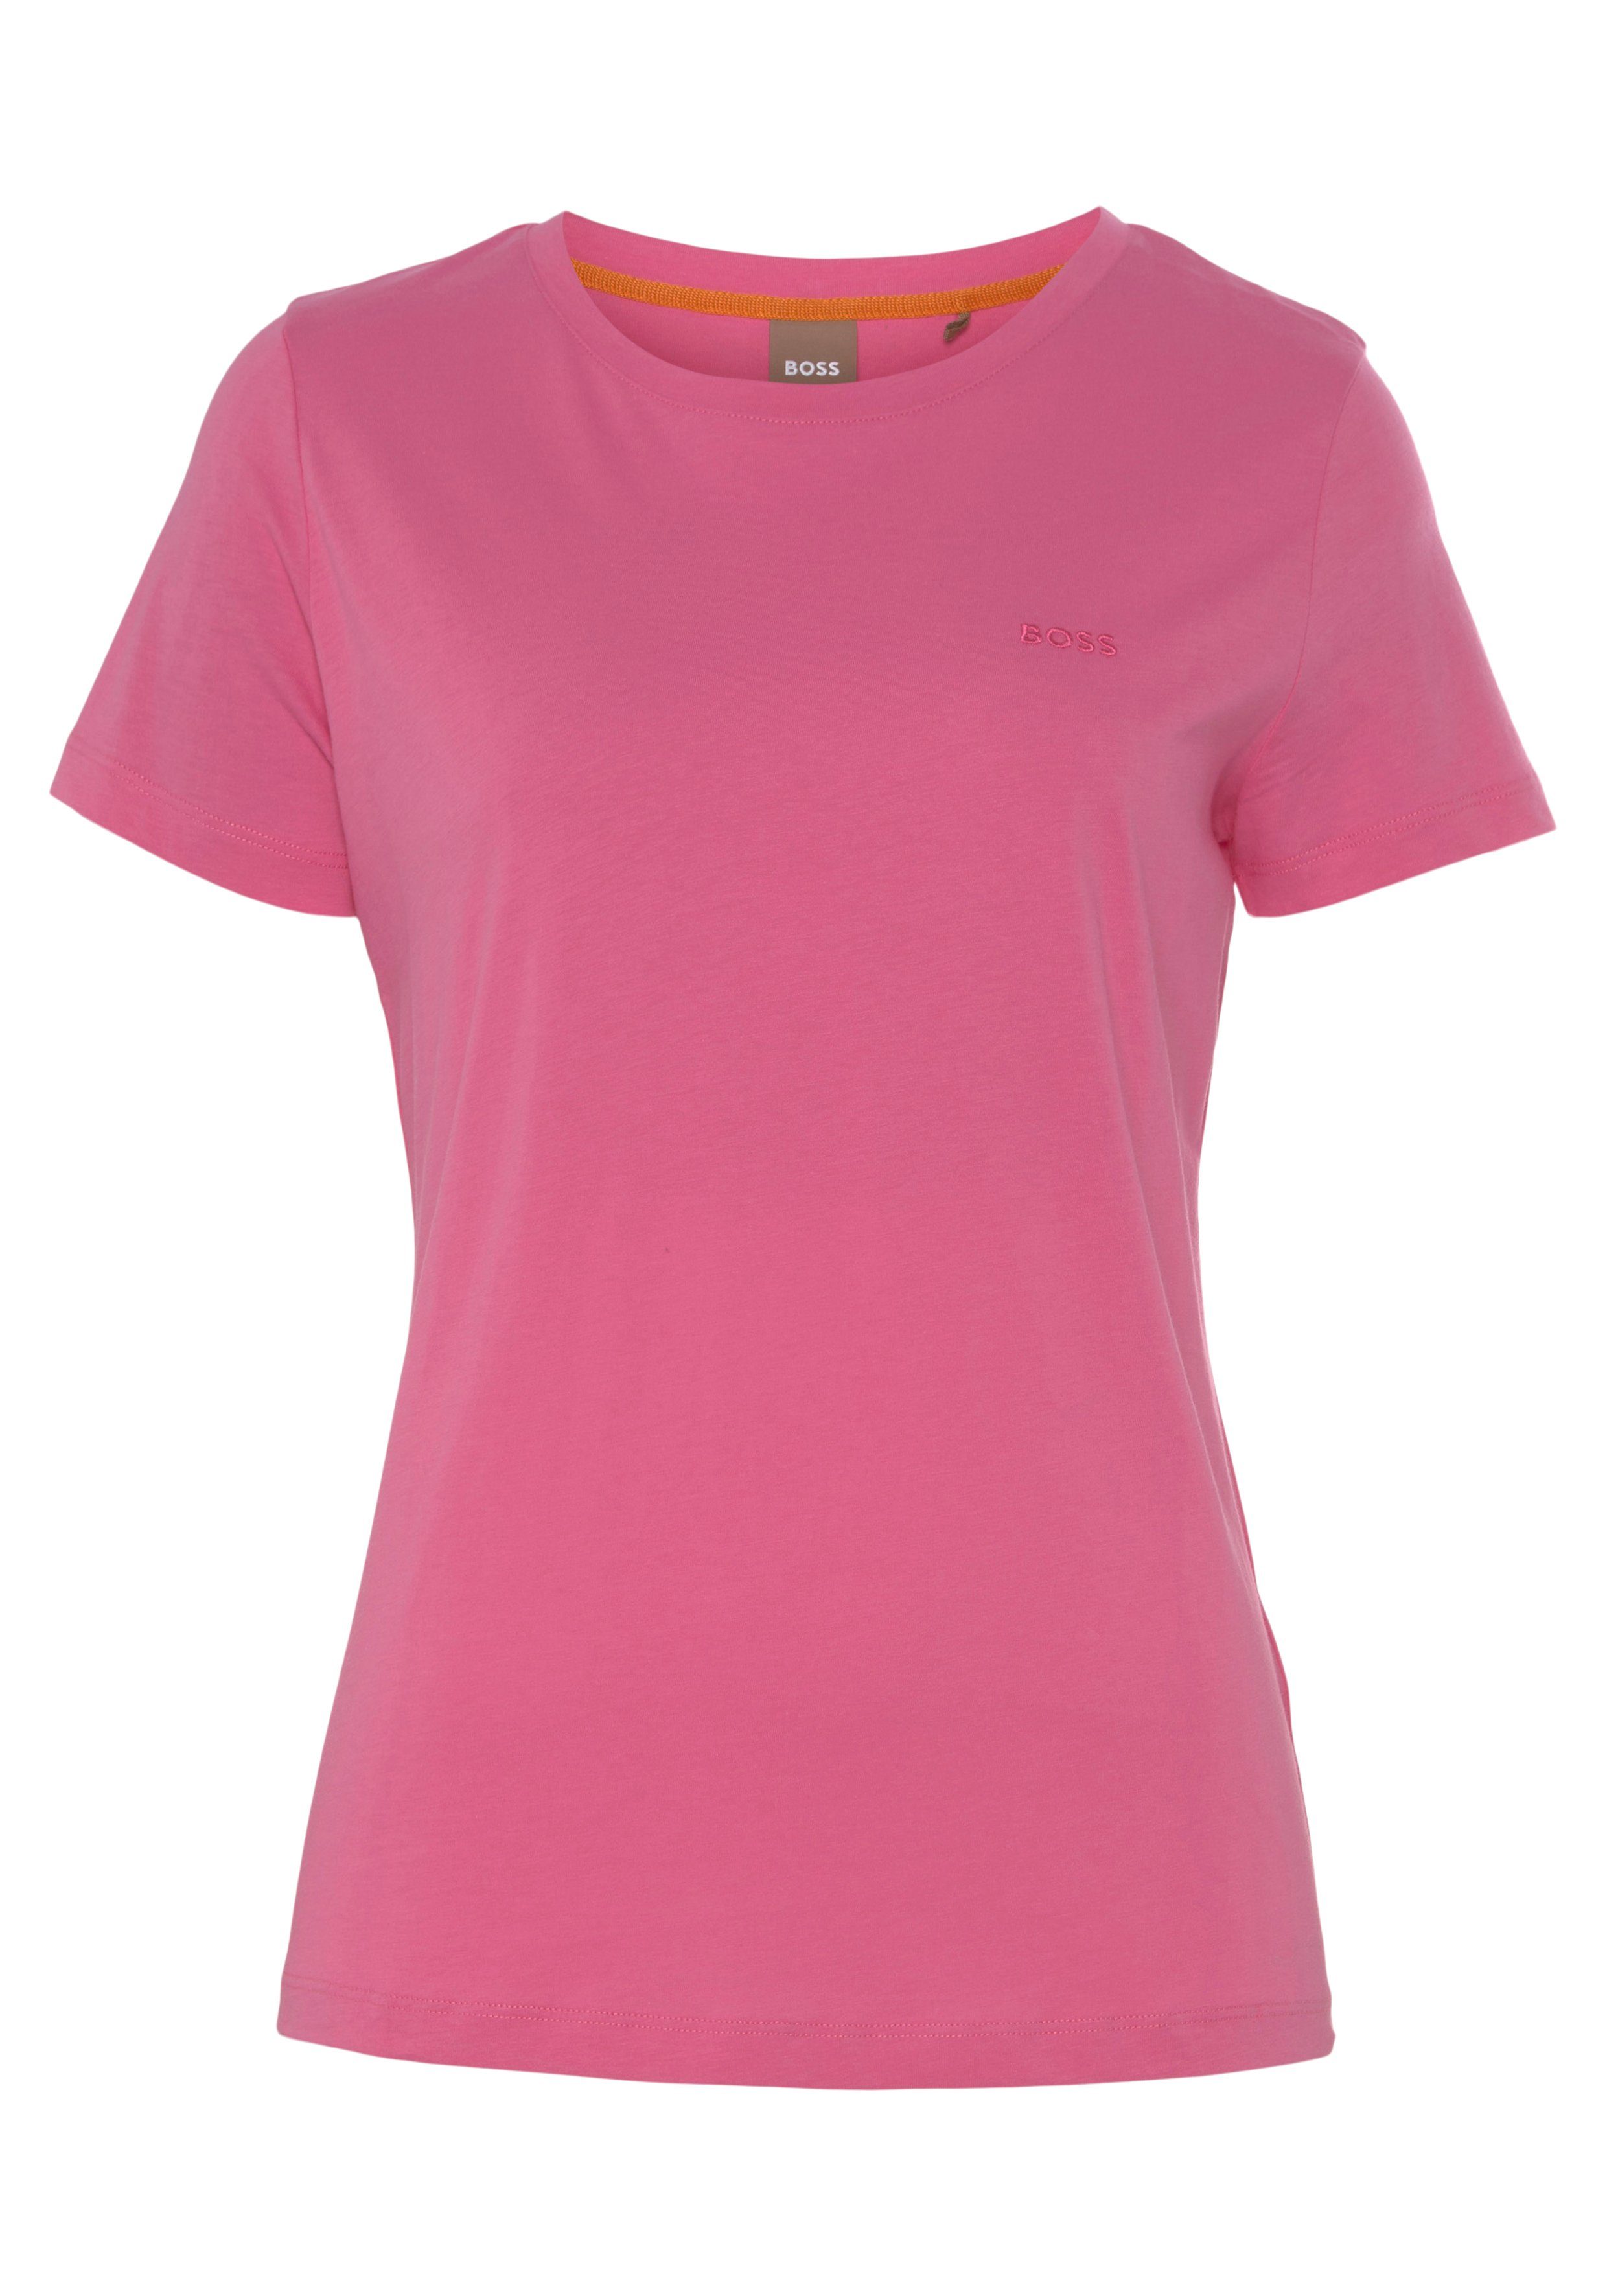 Stoff, Qualität Premium Logostickerei, hochwertiger ORANGE BOSS T-Shirt weicher, medium_pink1 mit